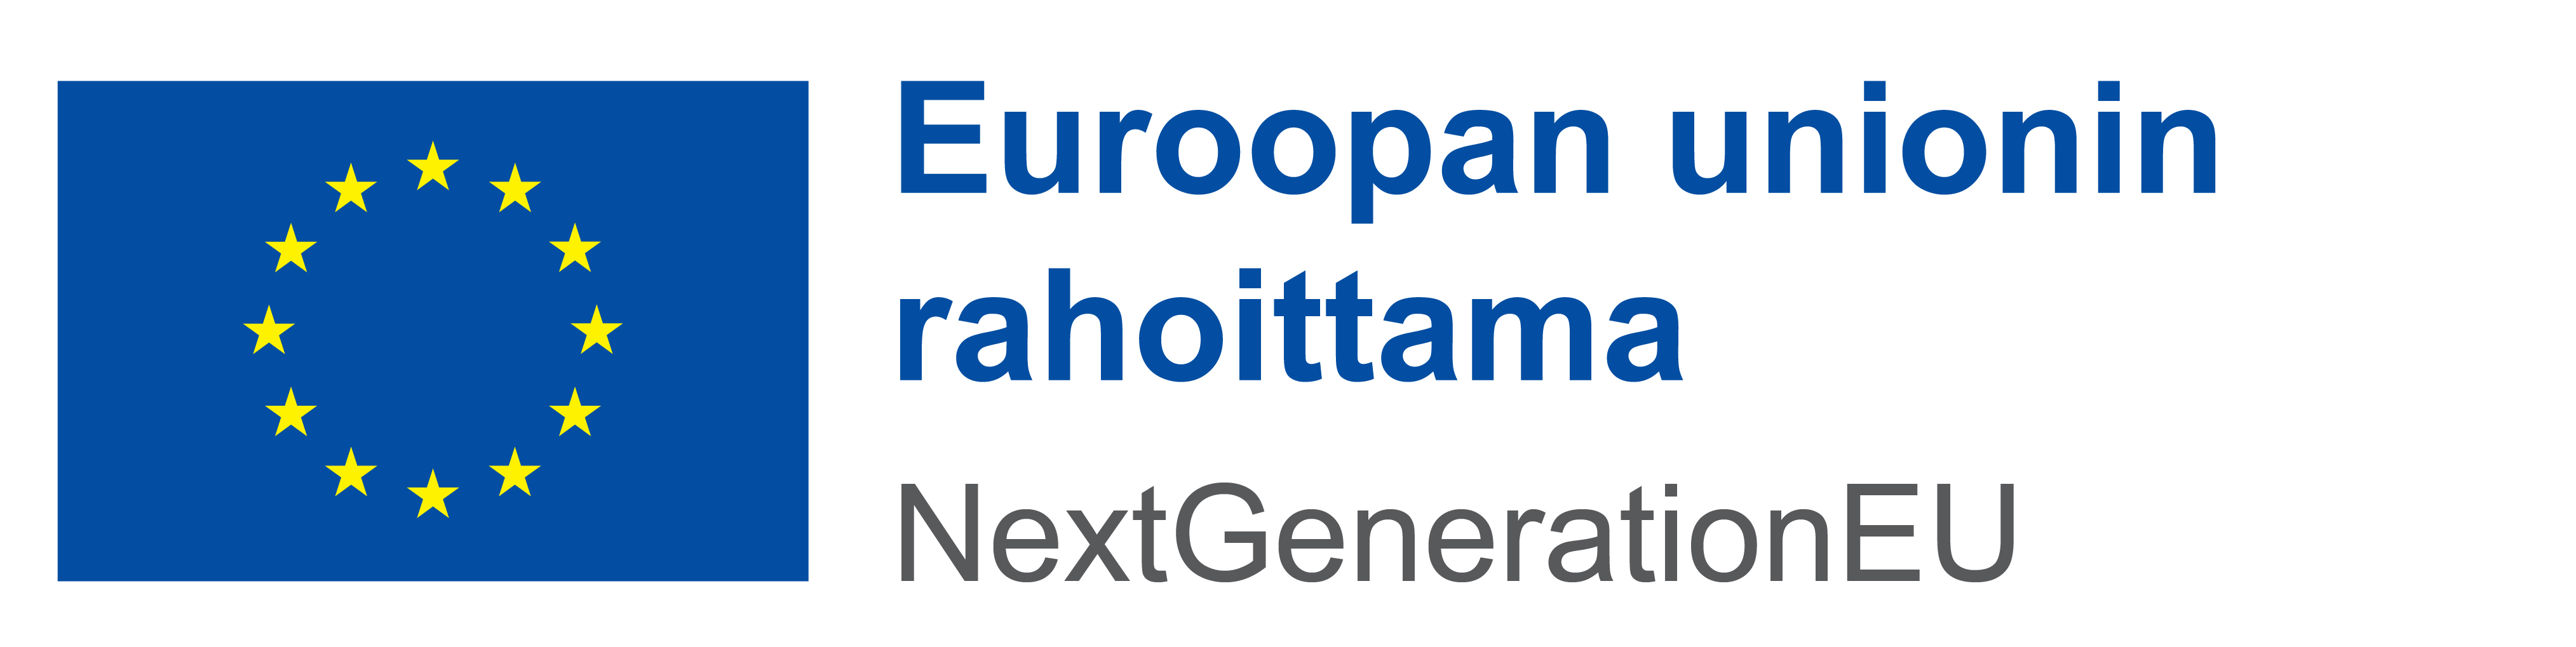 Euroopan unionin rahoittama - NextGeneration EU -logo